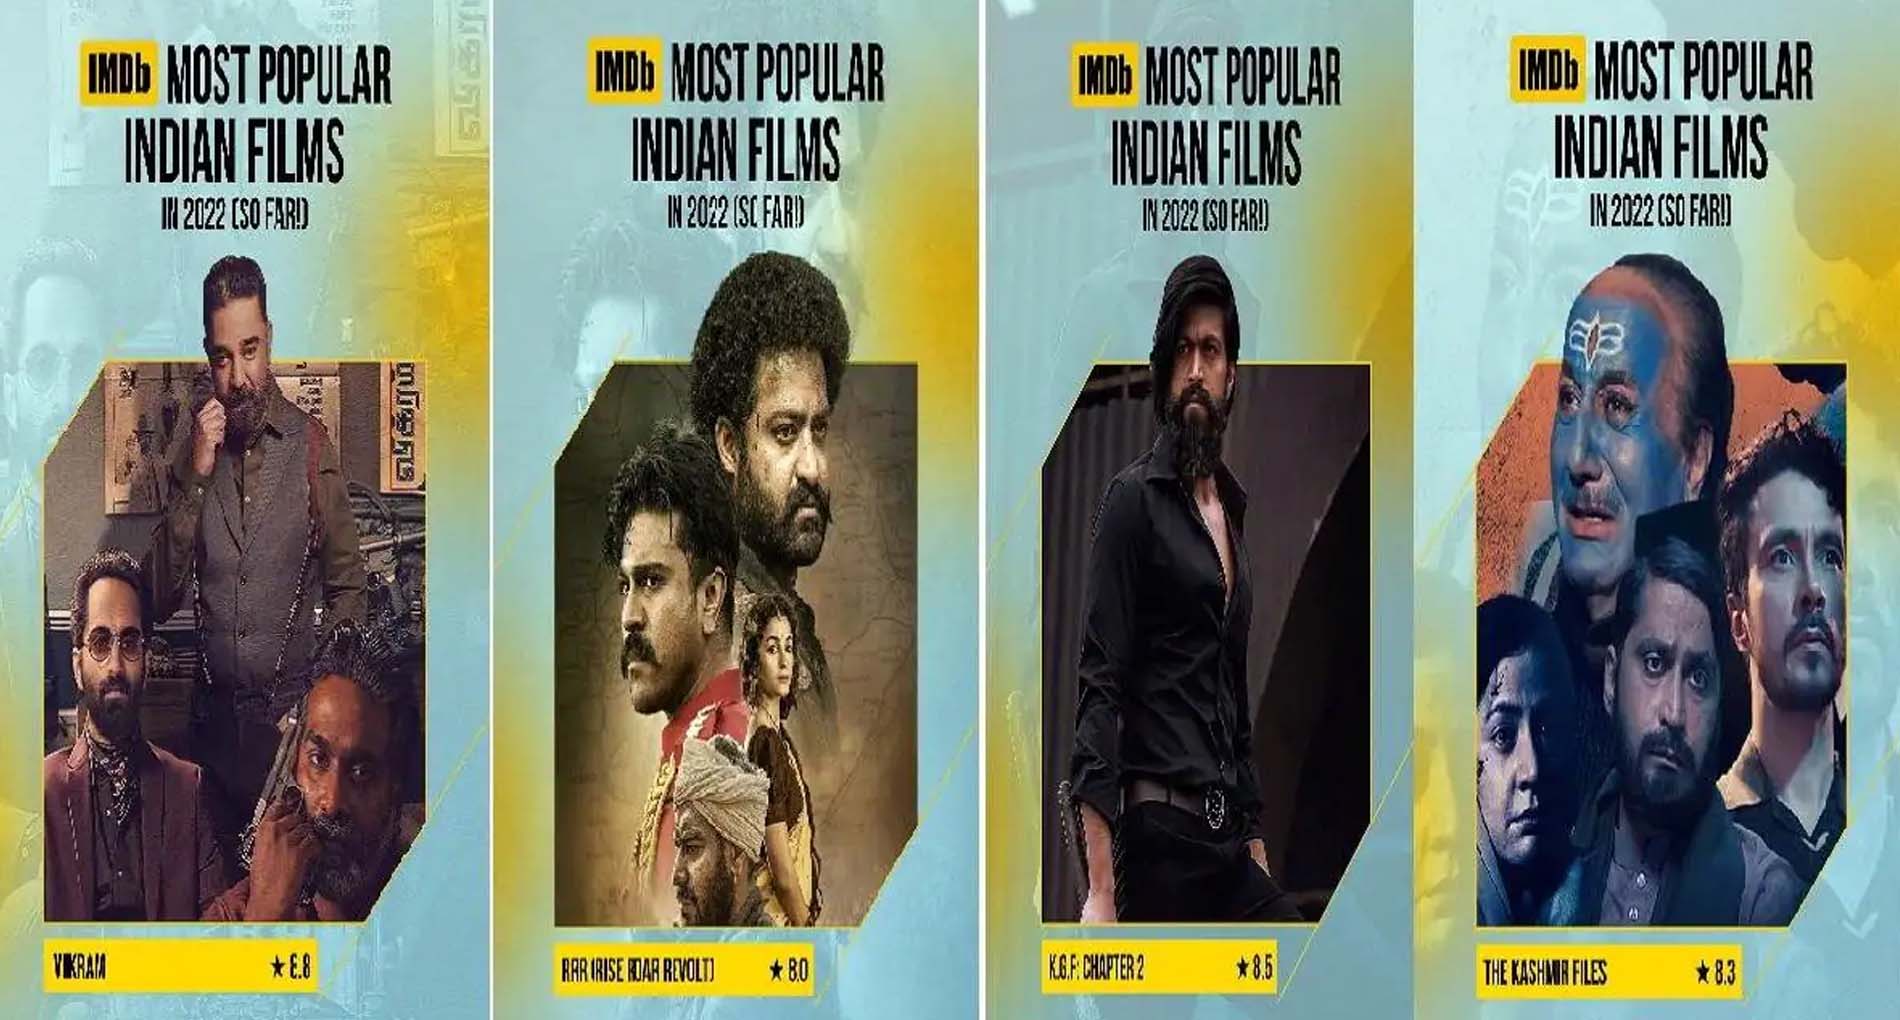 आइएमडीबी की 10 भारतीय फिल्म में विक्रम बनी मोस्ट पॉपुलर फिल्म, लिस्ट में हैं RRR और रनवे 34 सहित ये फ़िल्में